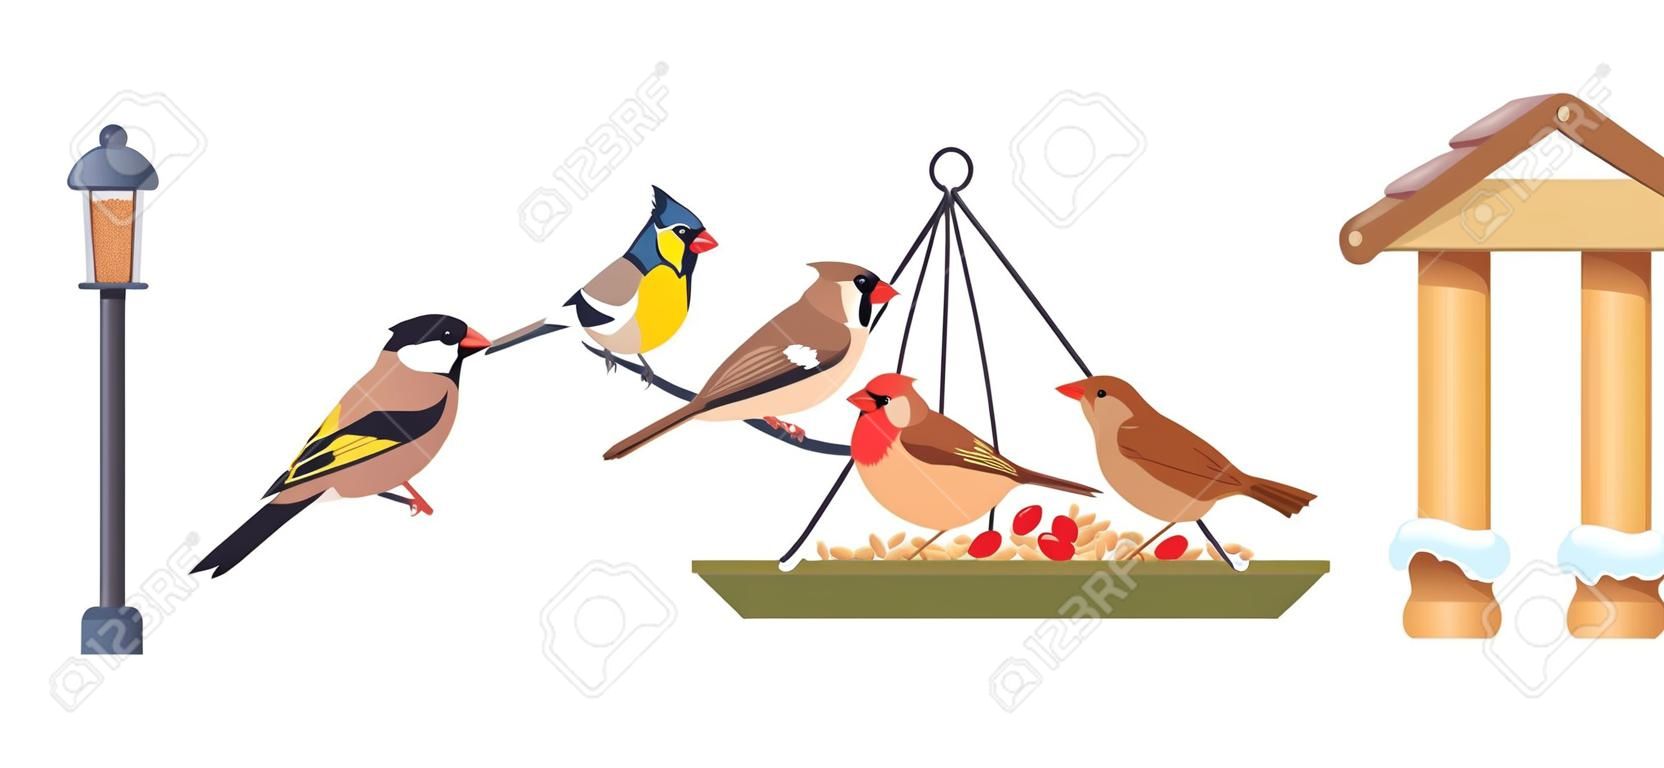 Karmnik dla ptaków zimowa karma dla ptaków karmienie lasów kardynał sikora ogród wiszący podwórkowy domek dla ptaków z nasionami dzika przyroda budowa plakat wektor ilustracja